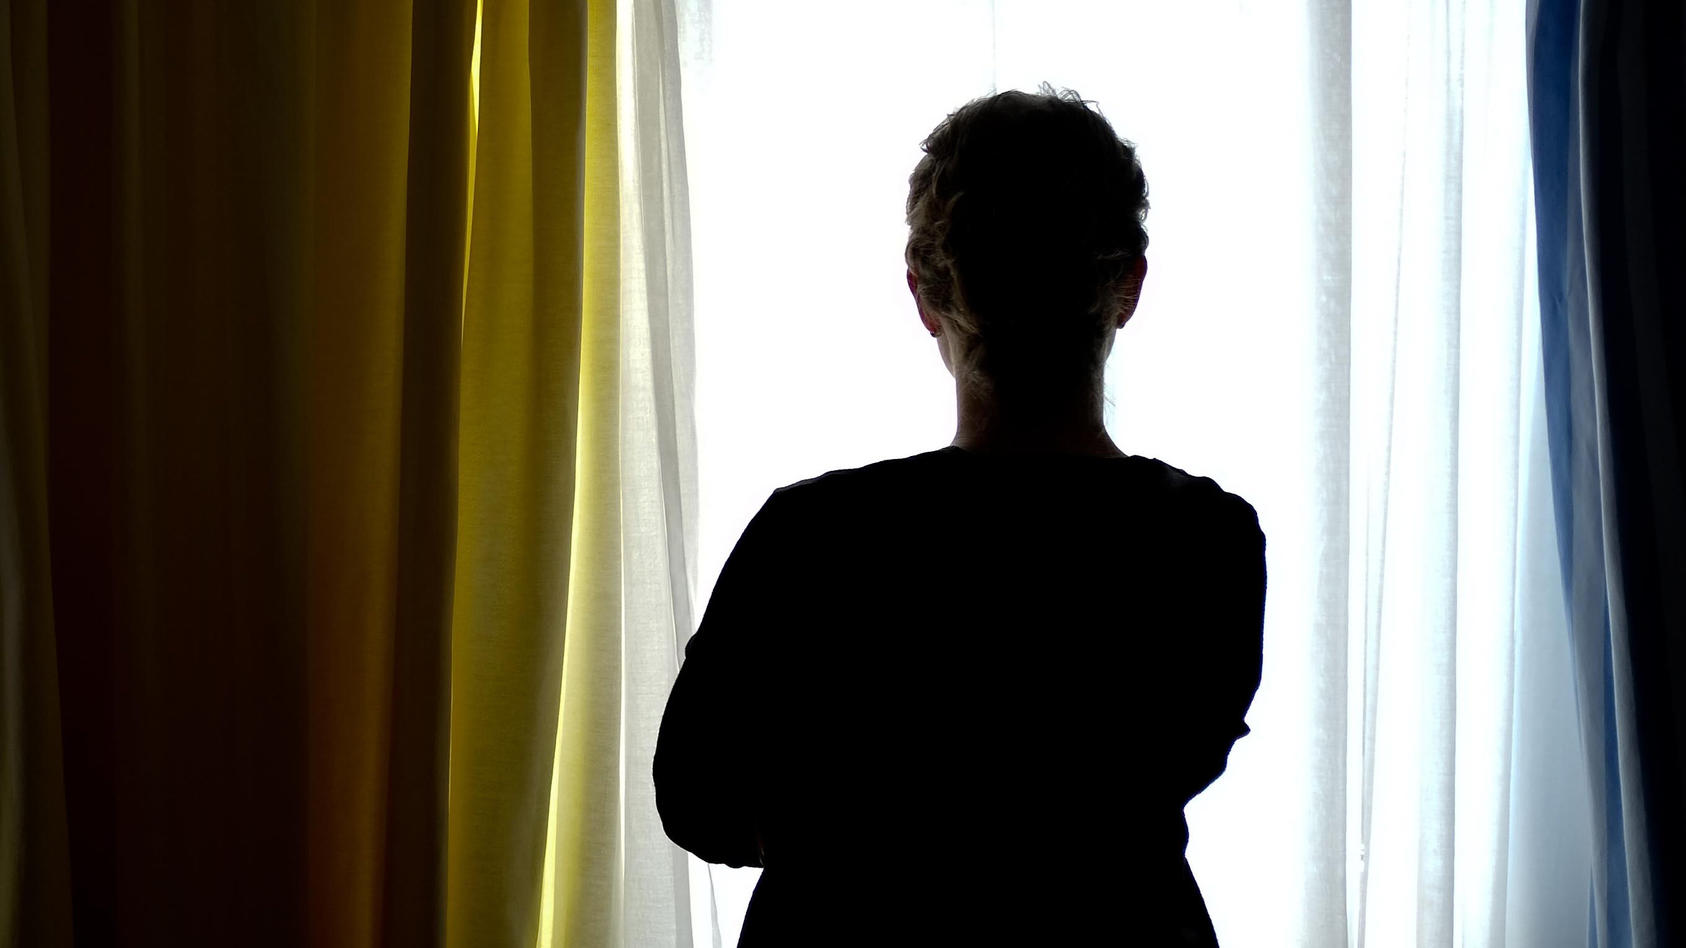 Frauen, die Opfer von Gewalt wurden, können sich in Österreich demnächst über eine spezielle Notrufnummer Hilfe holen.